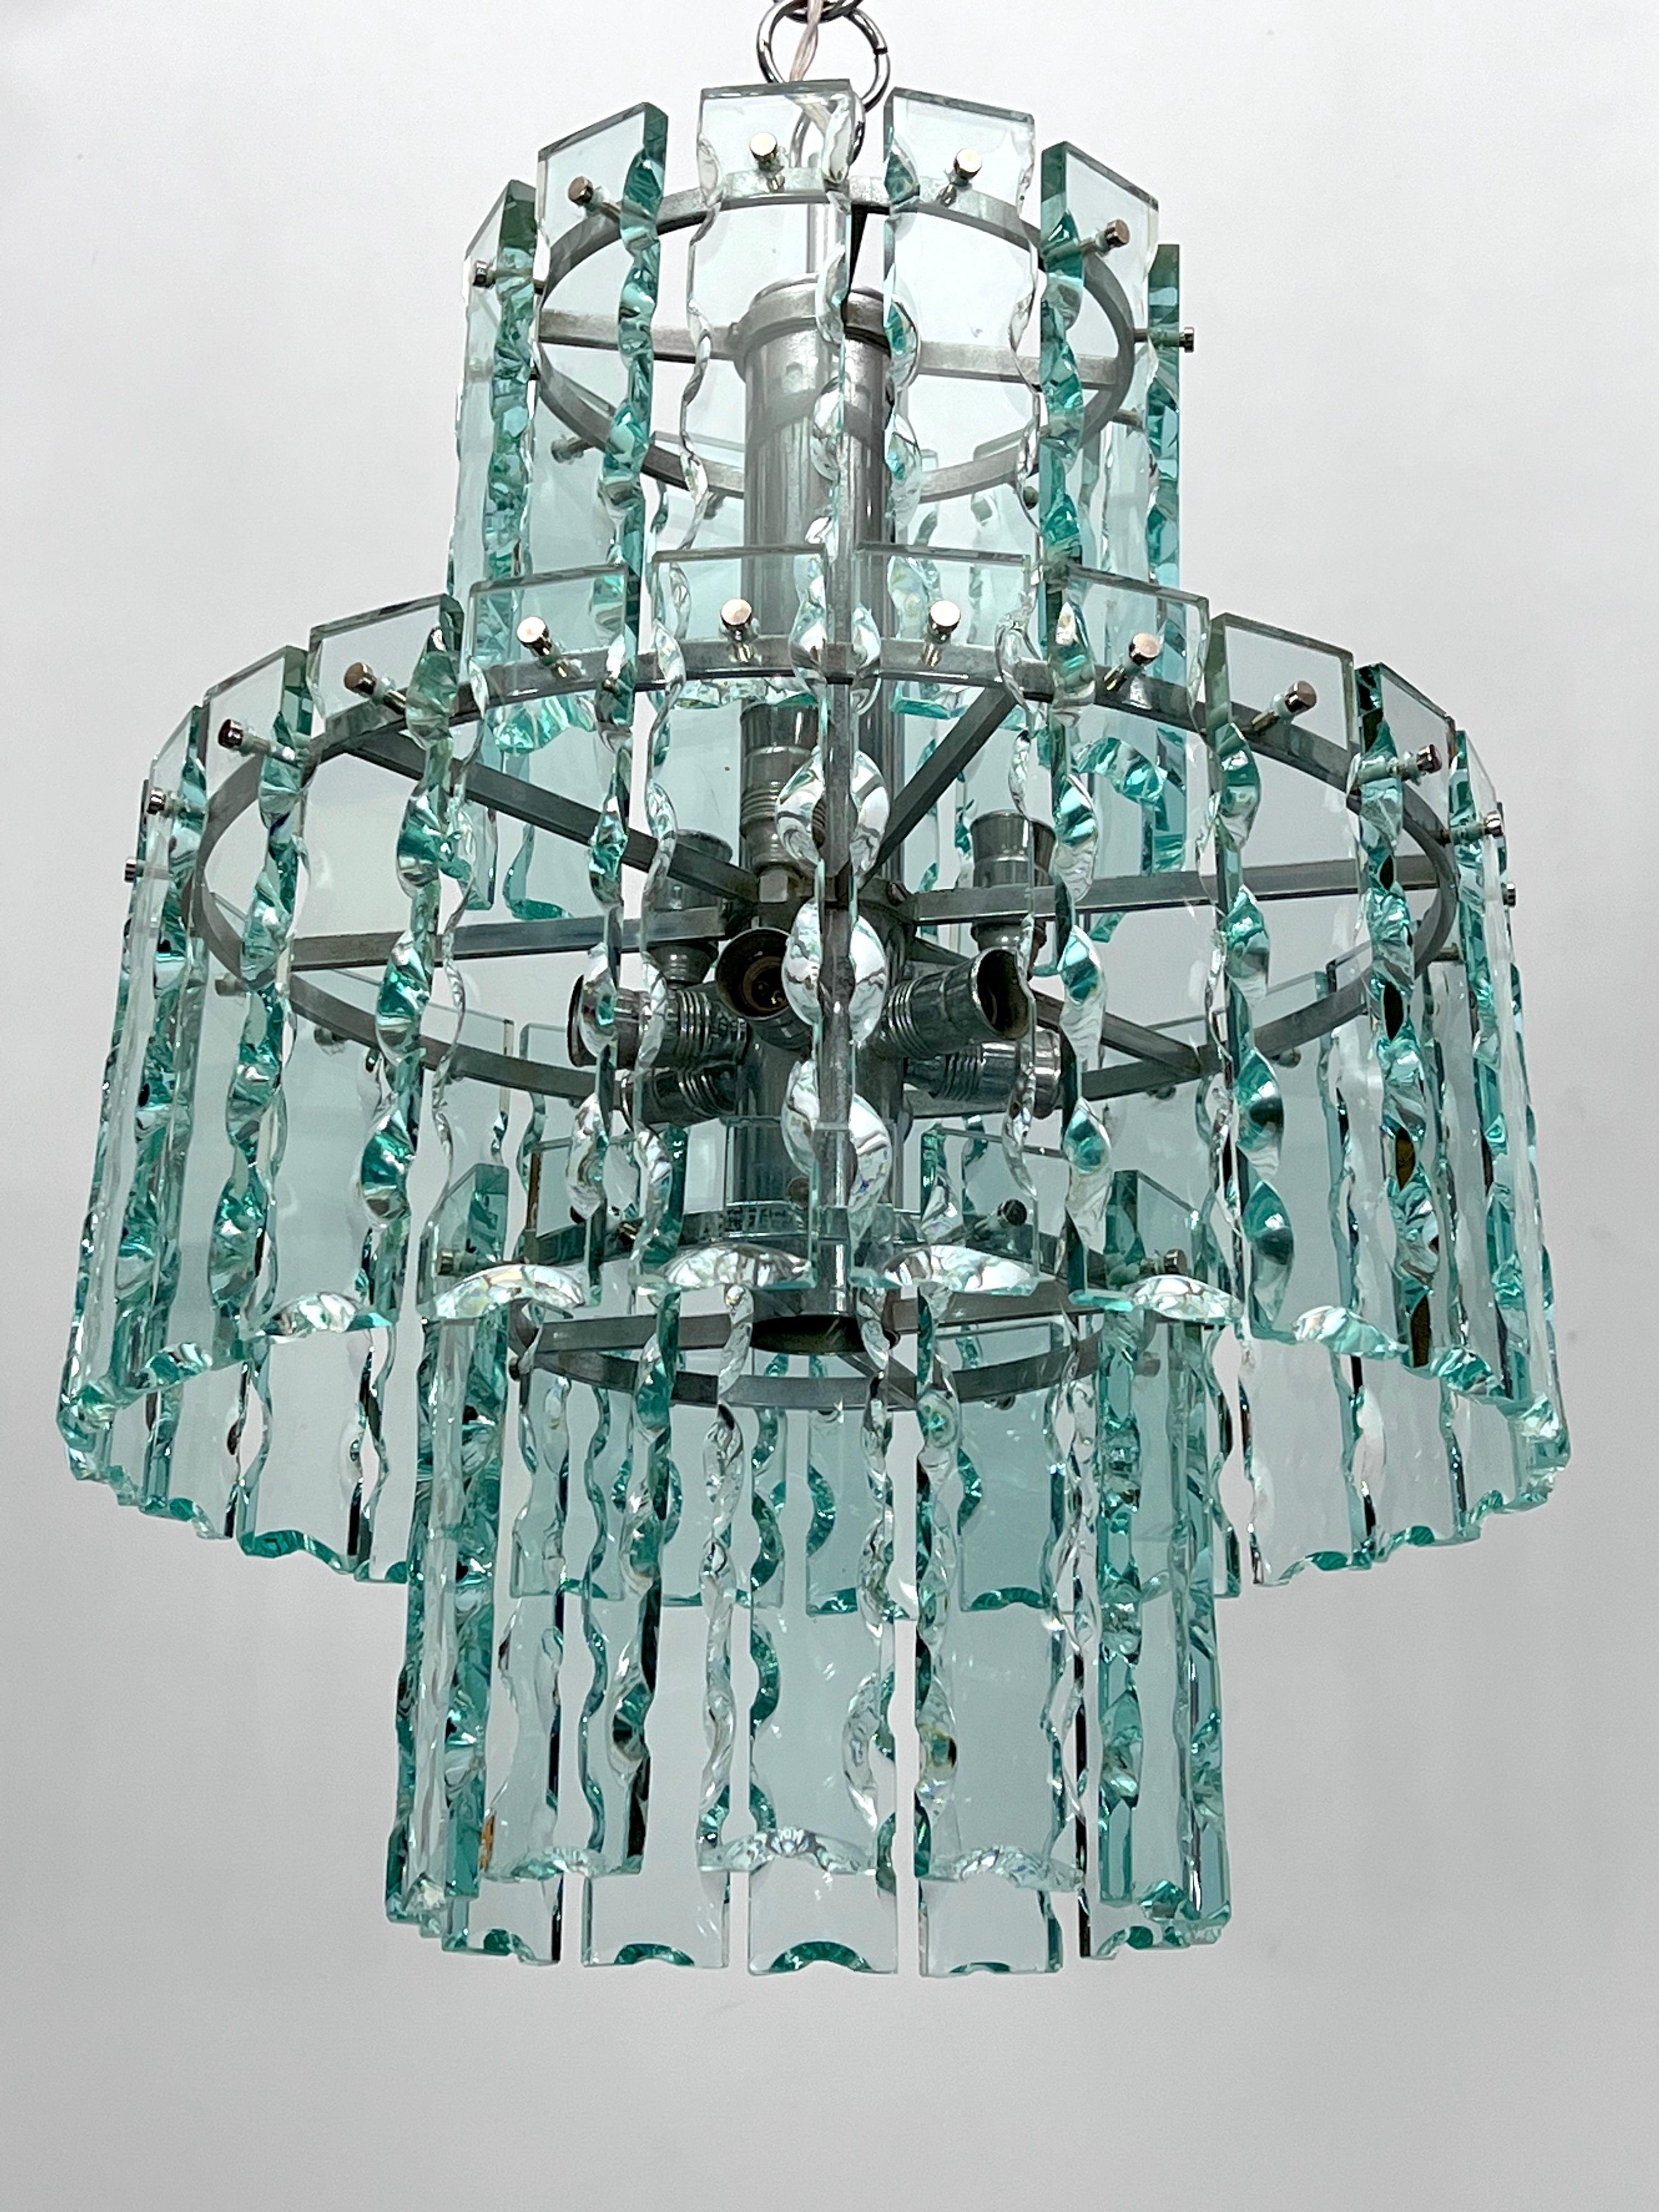 Kronleuchter aus dickem geschliffenem Glas, hergestellt von Zero Quattro in den 70er Jahren, in gutem Vintage-Zustand mit normalen Alters- und Gebrauchsspuren; einige kleine Chips in der Nähe der Schrauben. Die Struktur ist aus verchromtem Messing